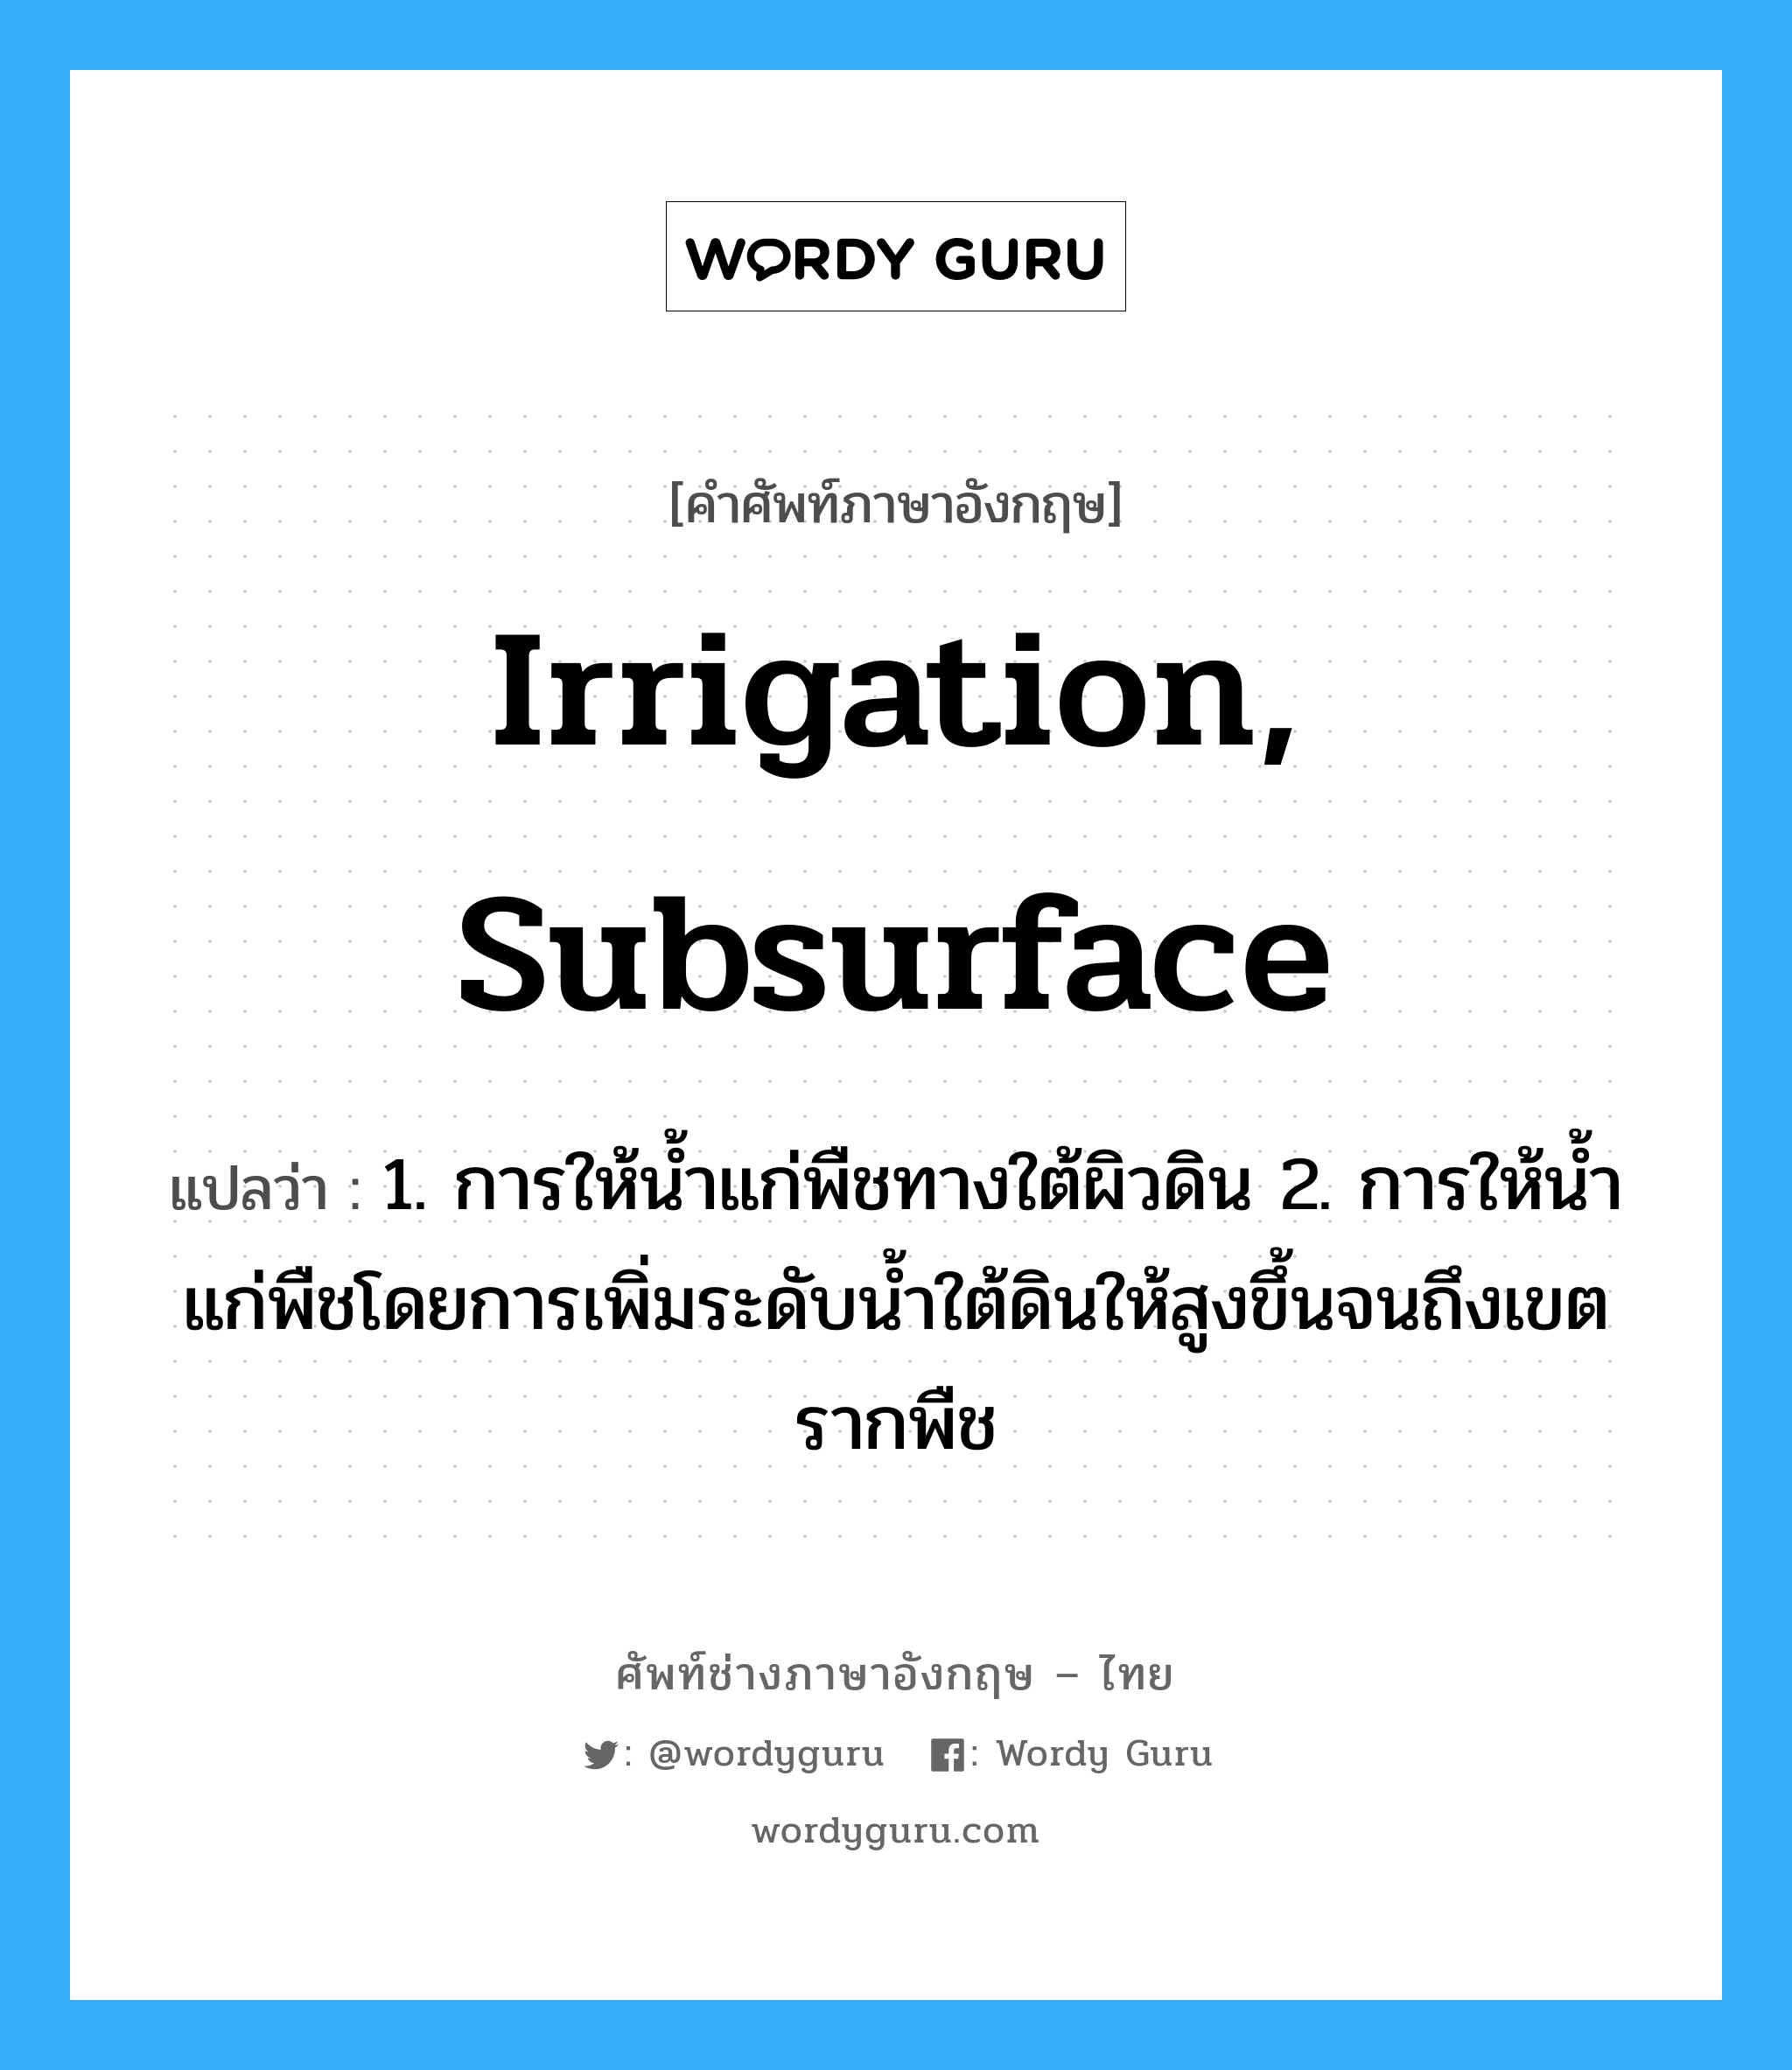 irrigation, subsurface แปลว่า?, คำศัพท์ช่างภาษาอังกฤษ - ไทย irrigation, subsurface คำศัพท์ภาษาอังกฤษ irrigation, subsurface แปลว่า 1. การให้น้ำแก่พืชทางใต้ผิวดิน 2. การให้น้ำแก่พืชโดยการเพิ่มระดับน้ำใต้ดินให้สูงขึ้นจนถึงเขตรากพืช